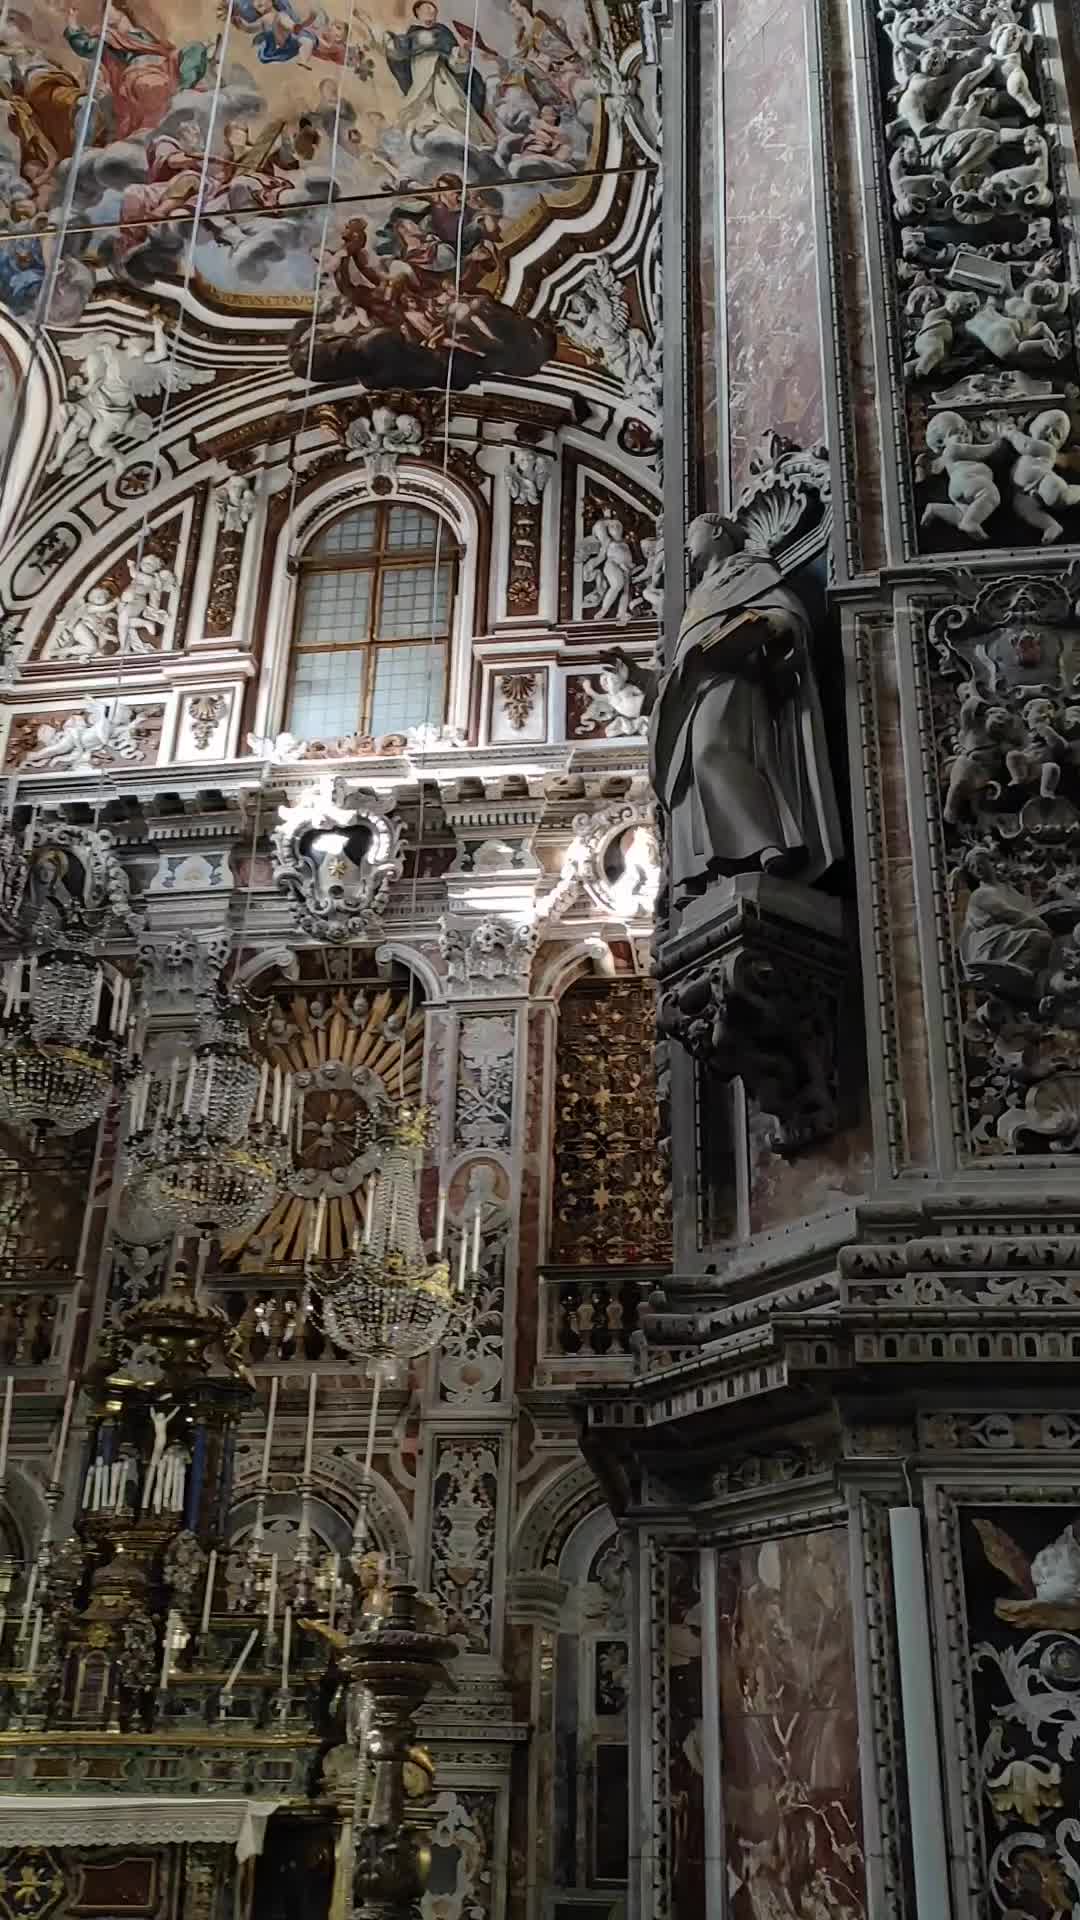 Discover Chiesa di Santa Caterina, Palermo